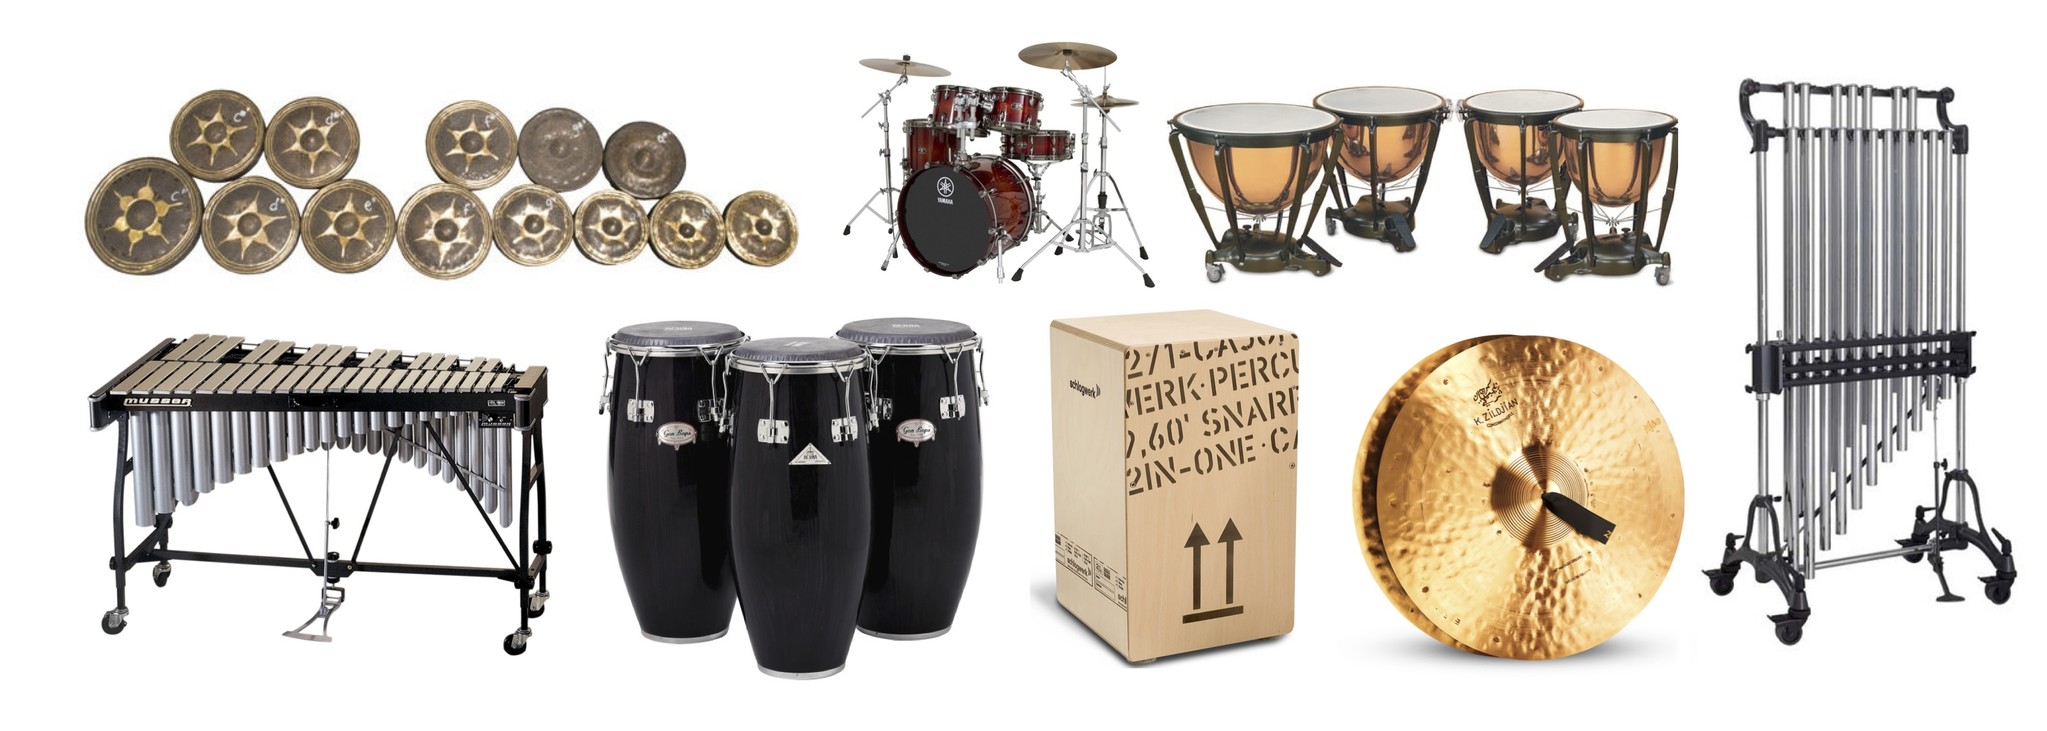 Les percussions, instruments de base minimum – Le site sorties